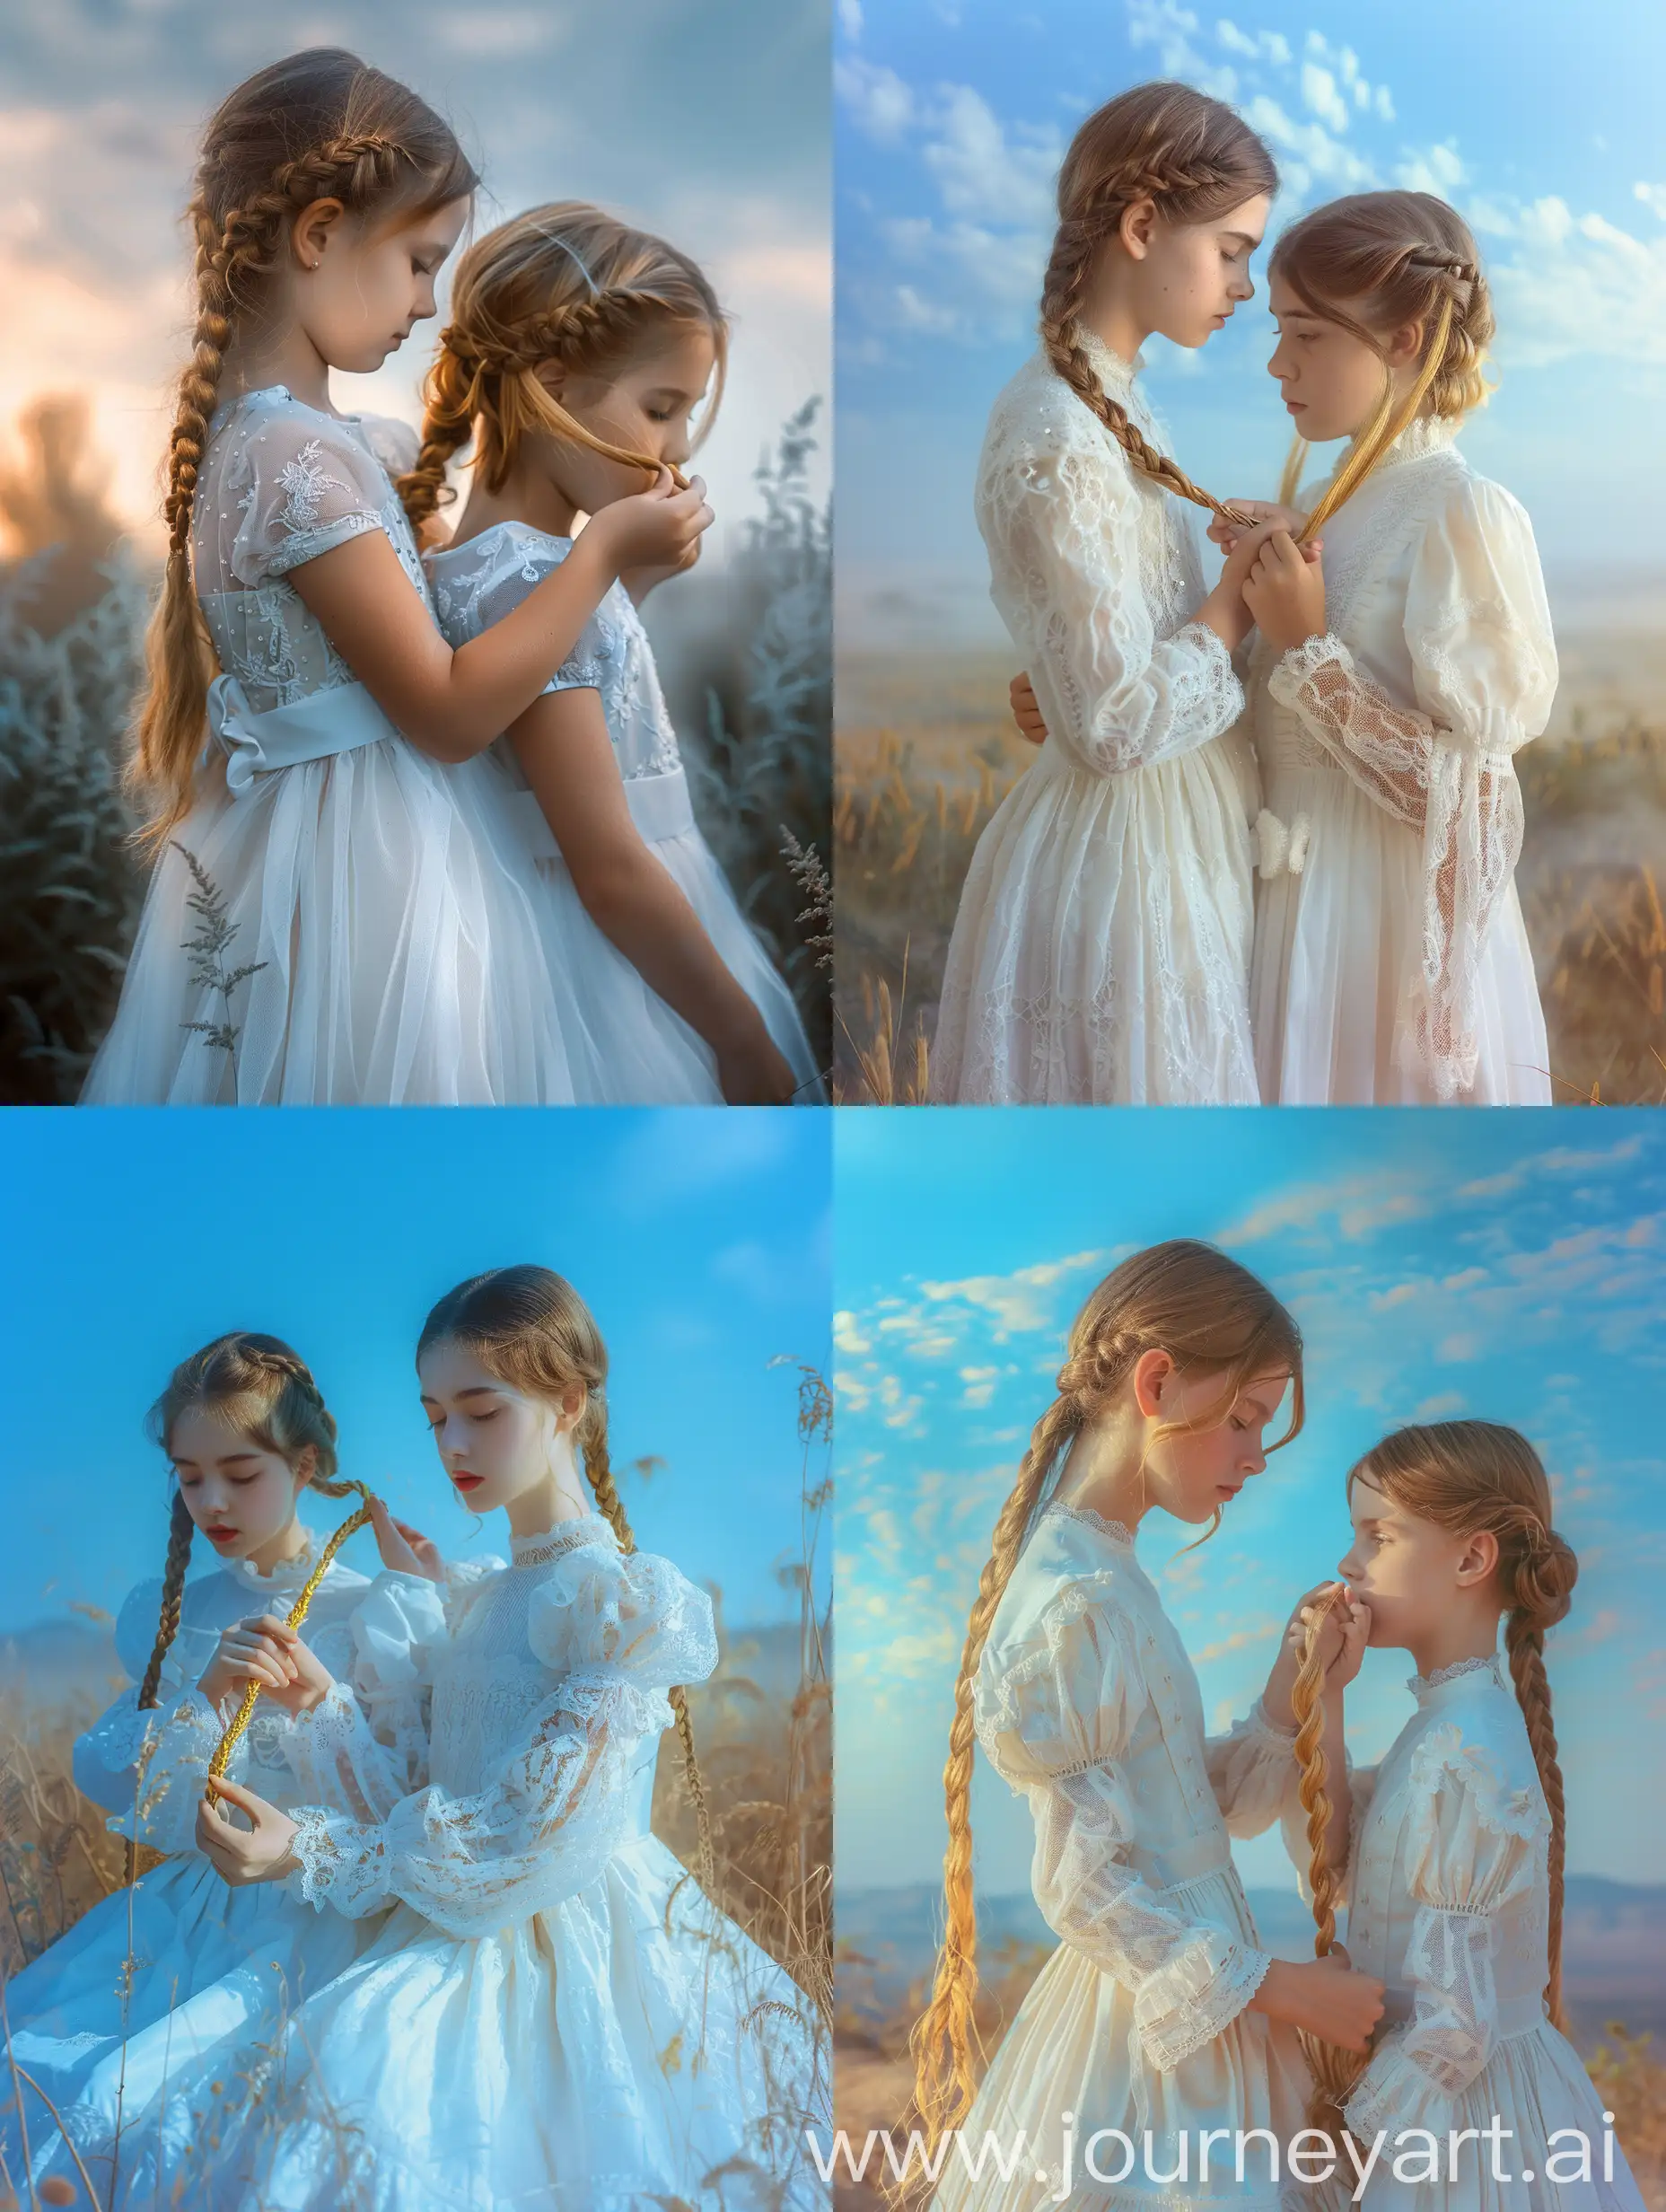 Девушка в белом изысканном платье заплетает золотистые волосы сестре близнецу, пейзаж, голубое небо, 8k, дымка, ультодетализация, плёночная фотография, рассеяние света, тенденции на артстанции, резкий фокус, высокая детализация 